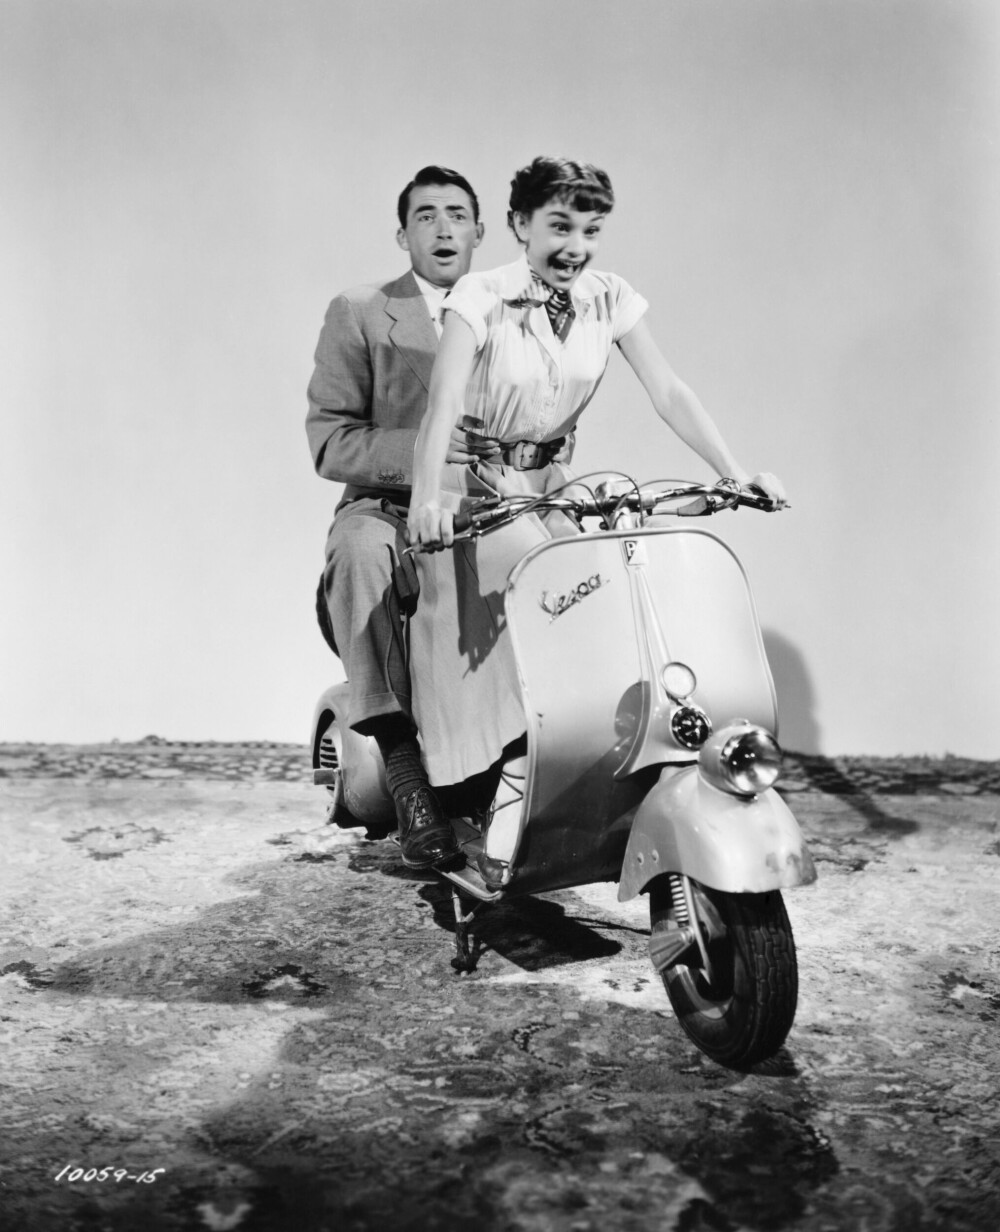 <b>PRINSESSE ANN I STYRINGEN:</b> Bildet er tatt i 1953 under en øvelse til en mopedscene i den romantiske komedien Roman Holiday. Motspiller Gregory Peck henger med som best han kan, med rollefigur Princess Ann i styringen.